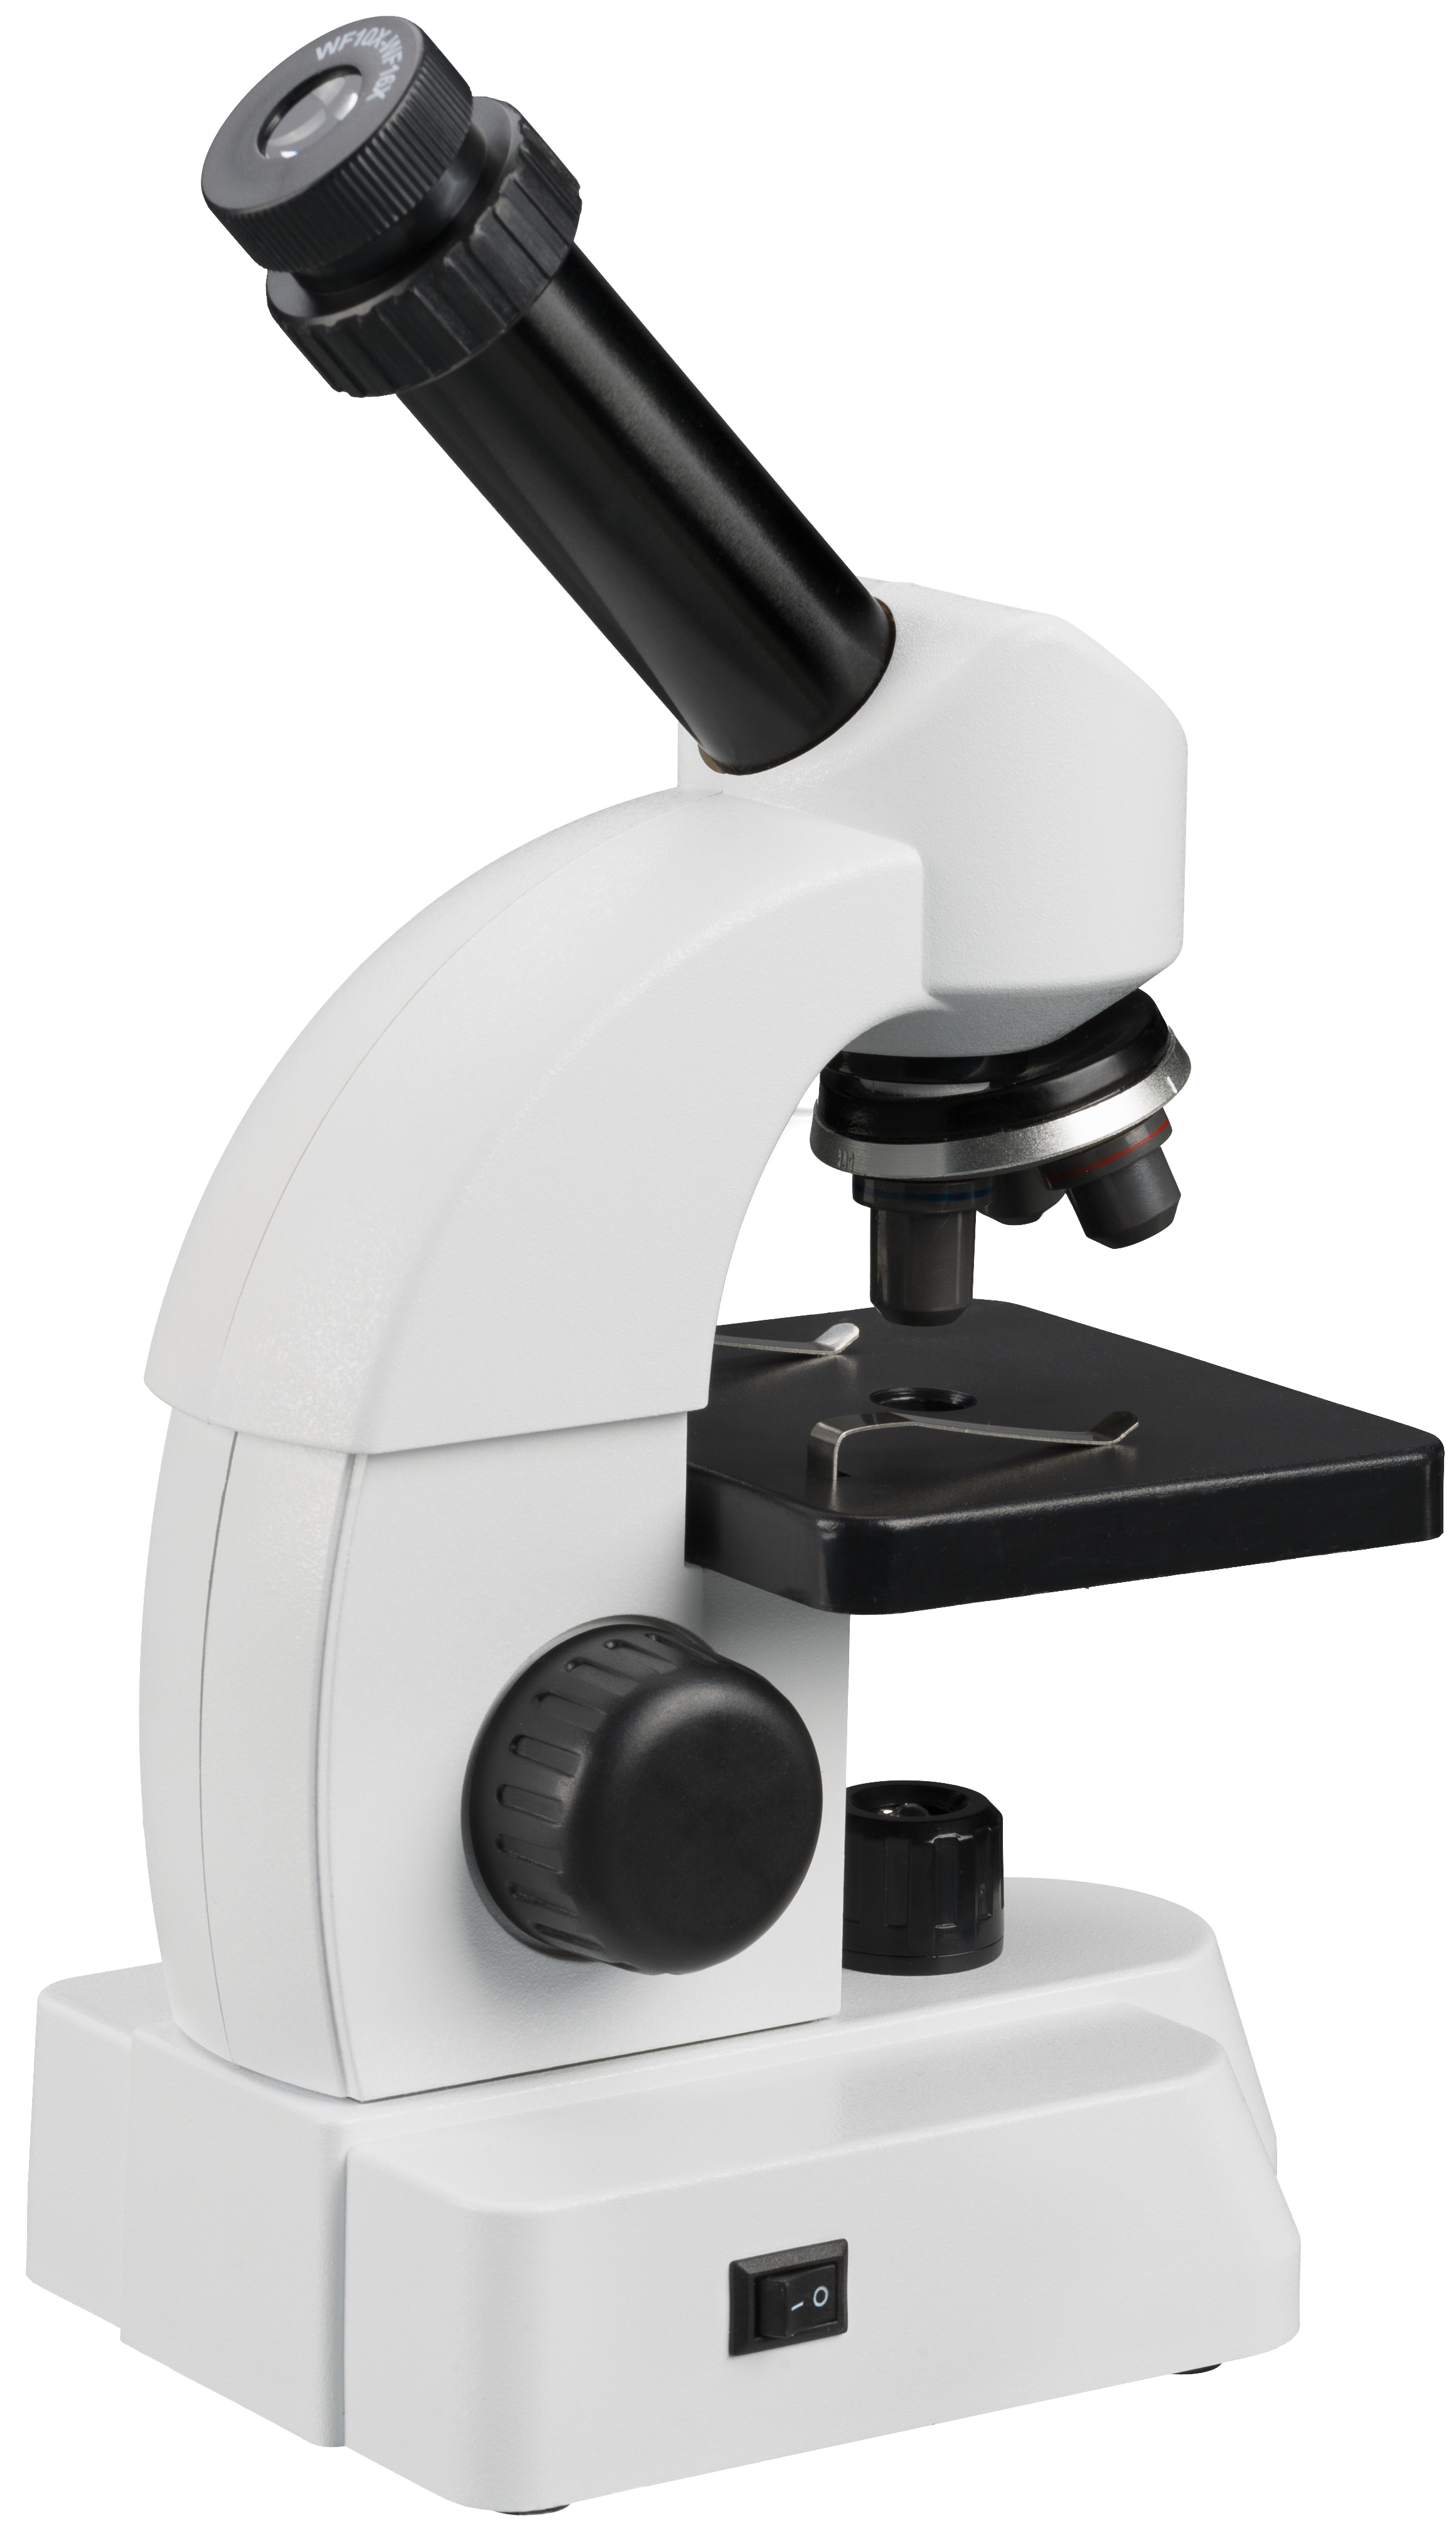 BRESSER JUNIOR 40-640x Mikroskop mit smartem Experimentier-Set mit QR-Code für Zusatzinfos (Refurbished)